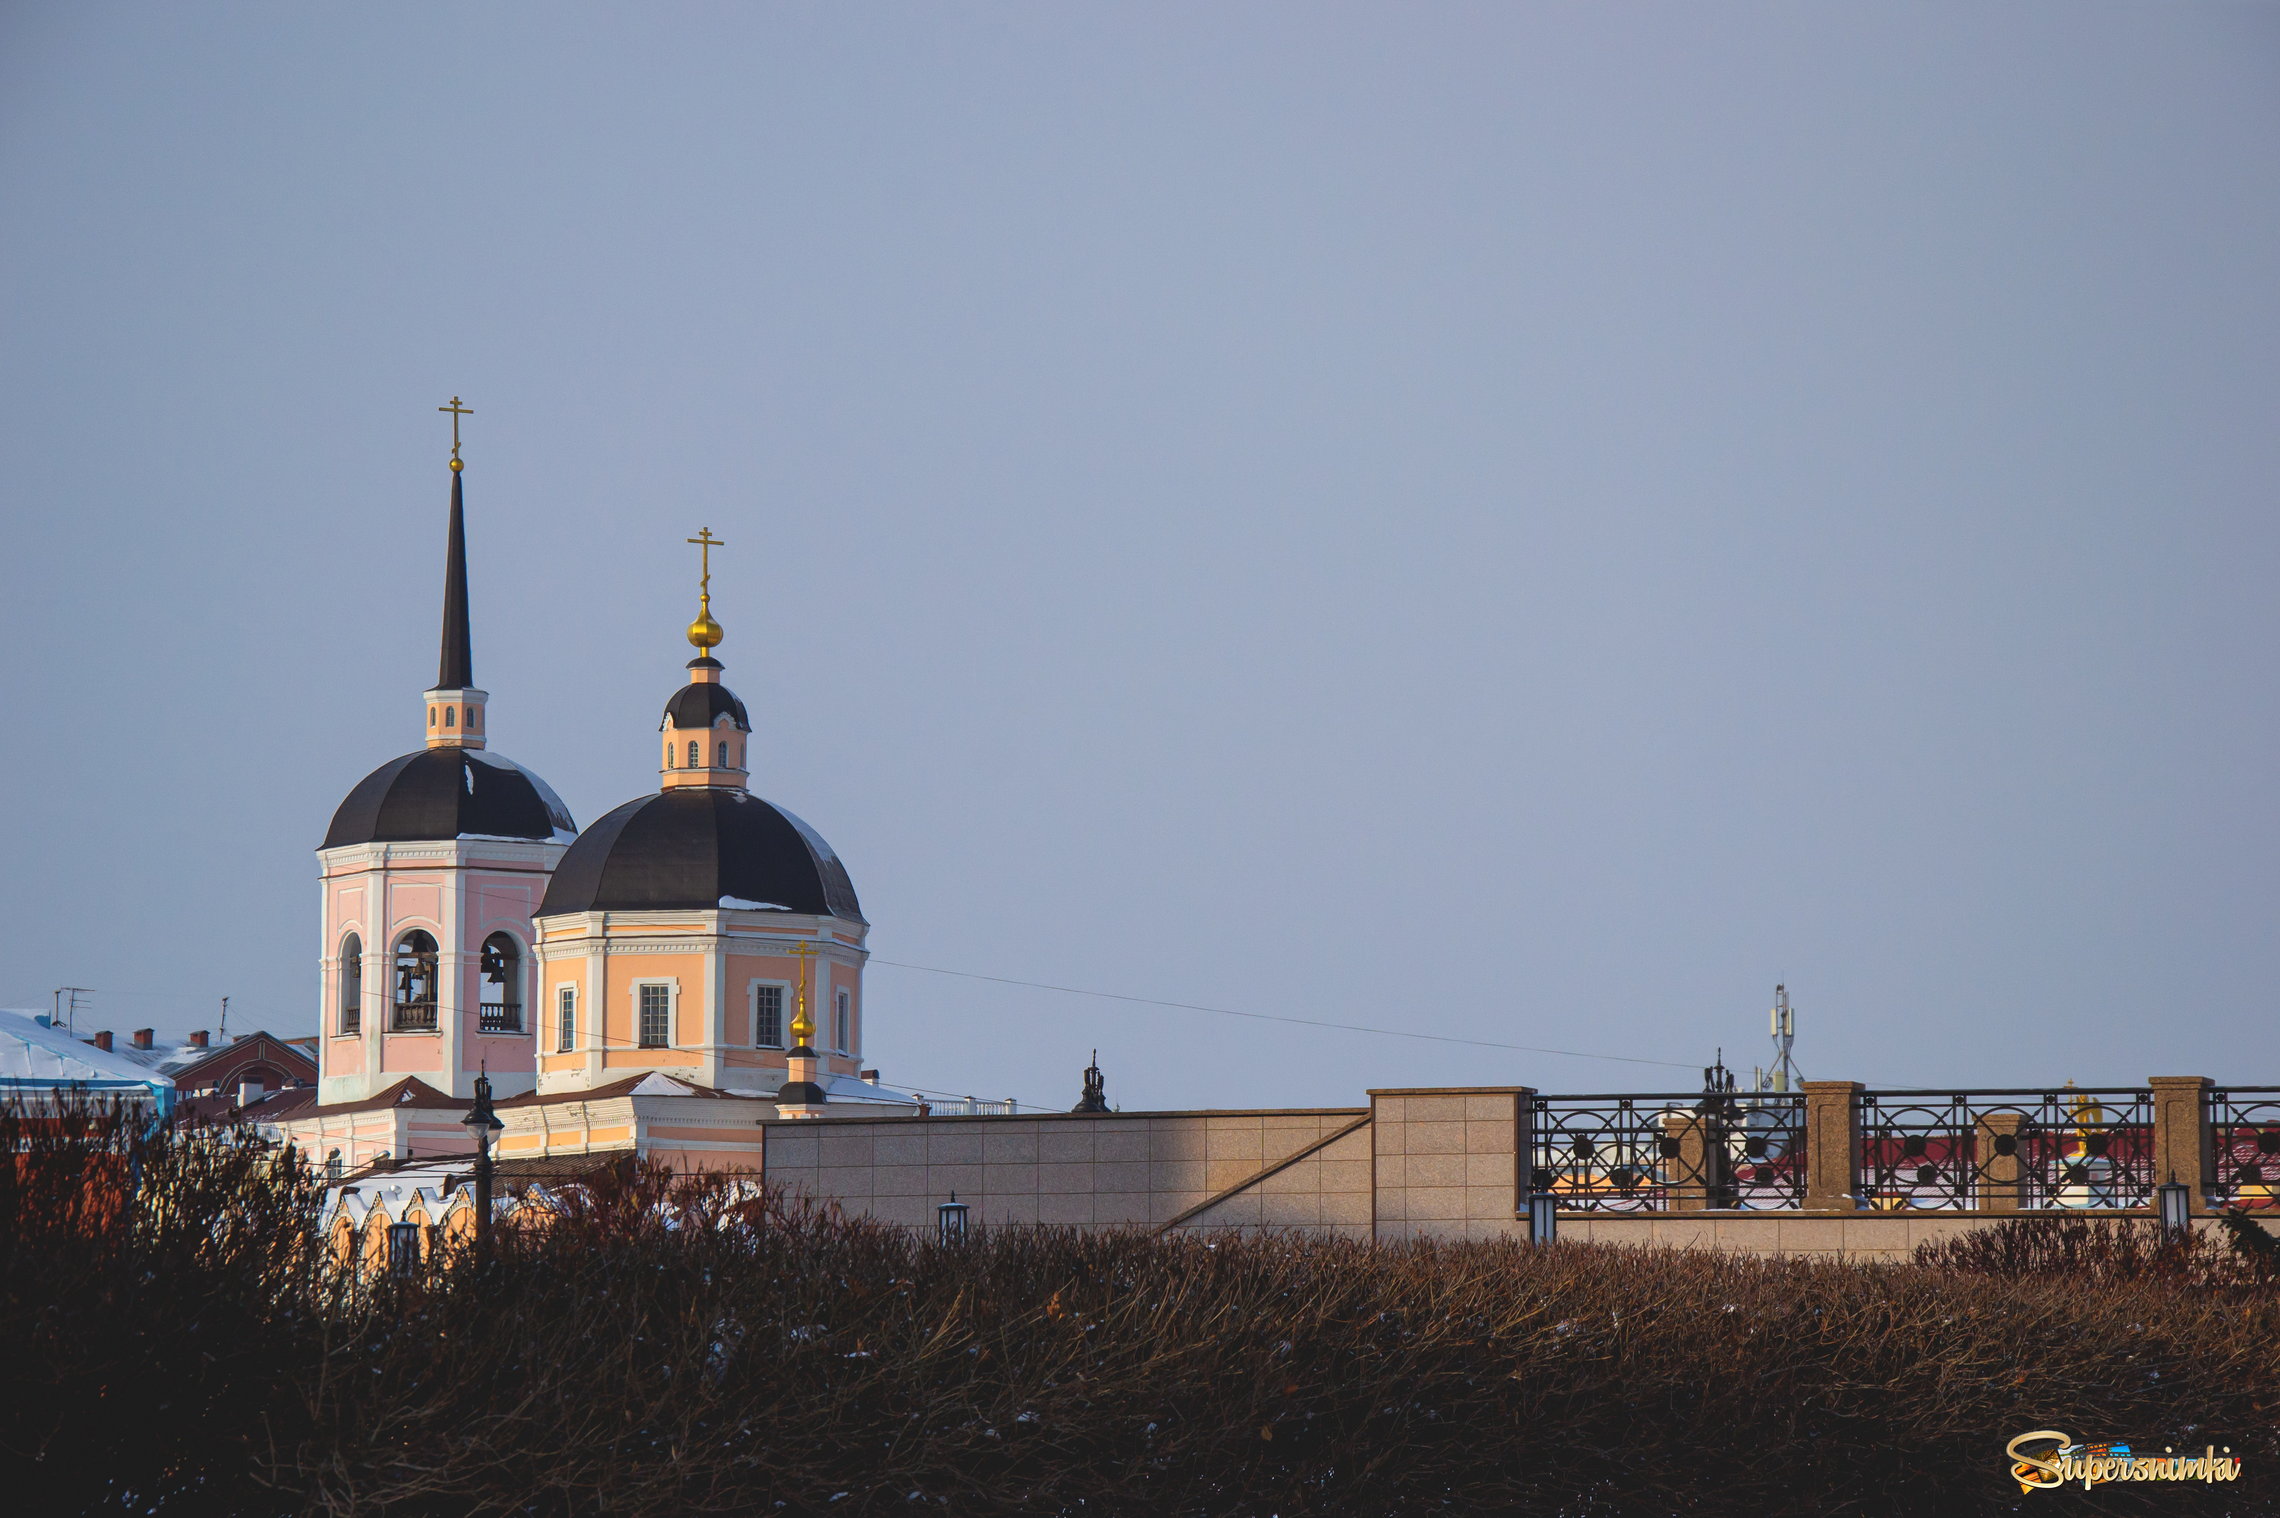 Богоявленский собор (Томск)